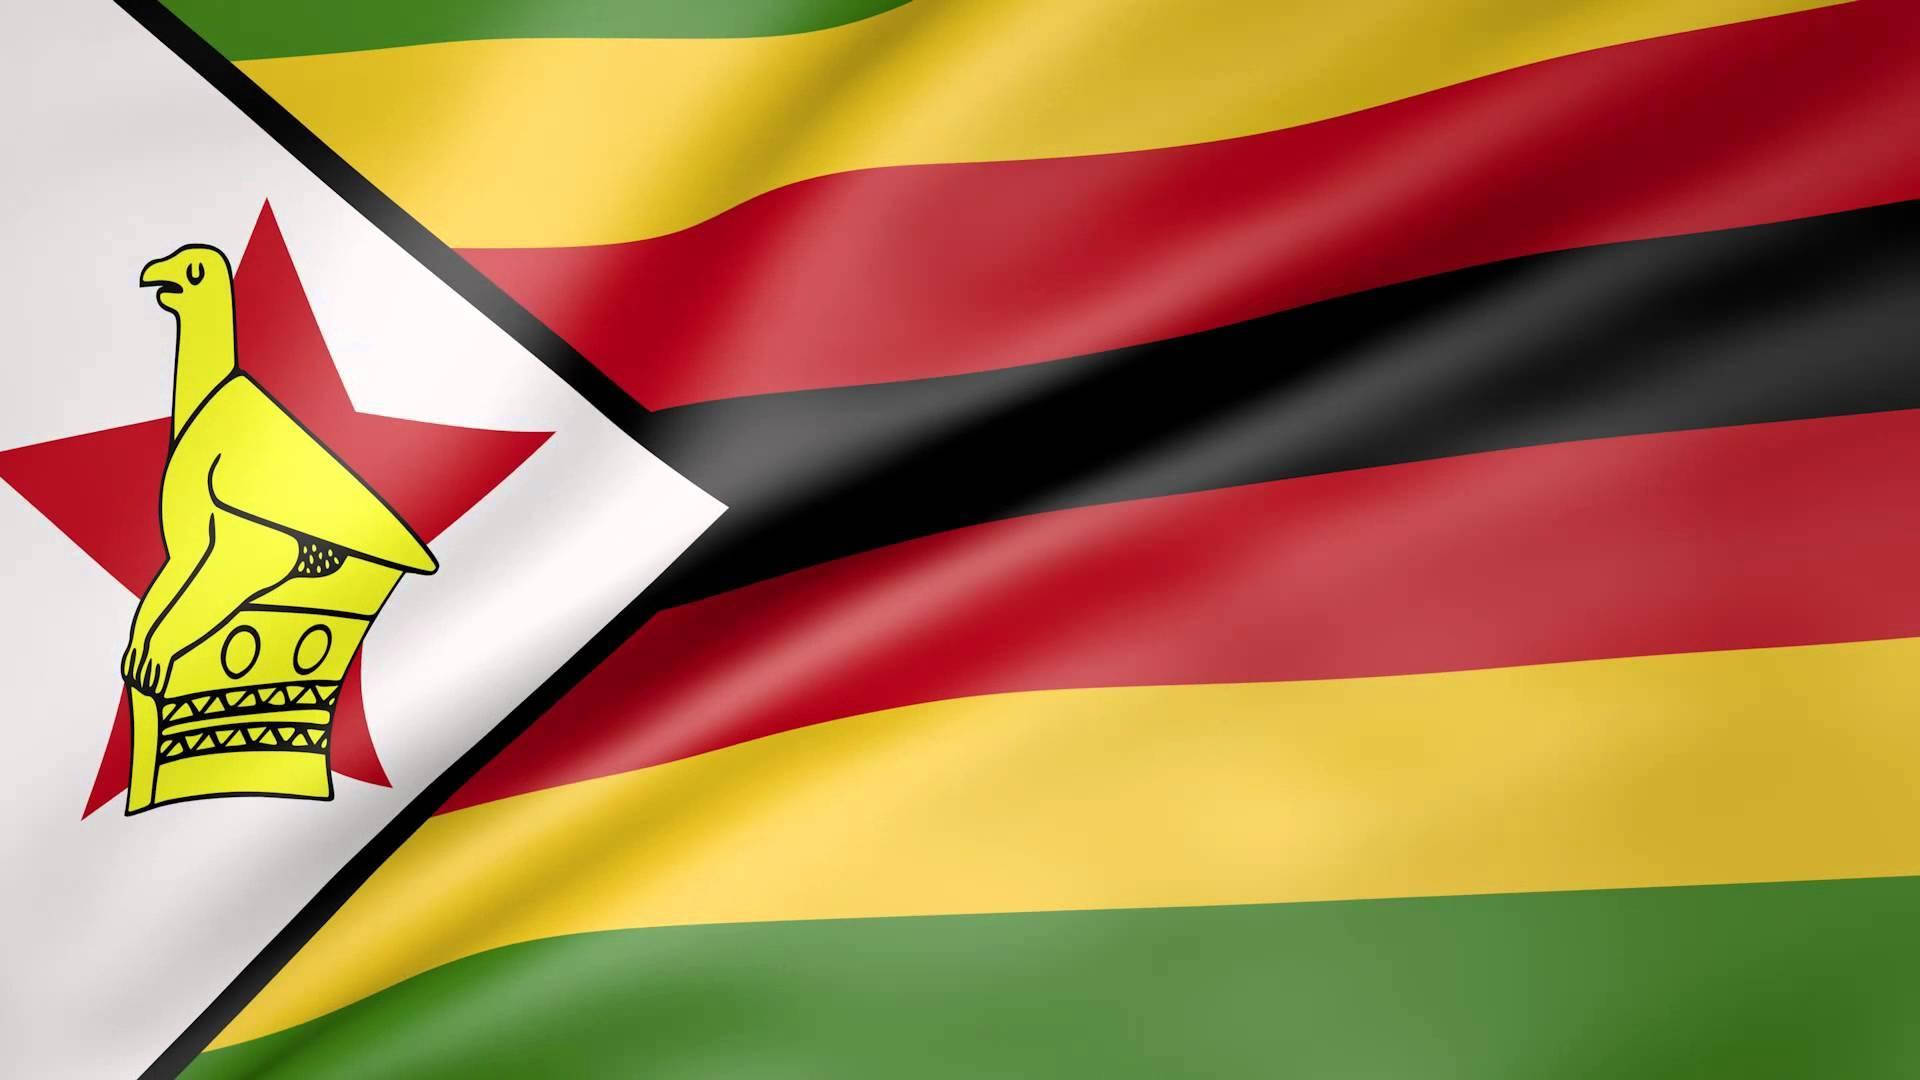 Zimbabwe's National Flag Background